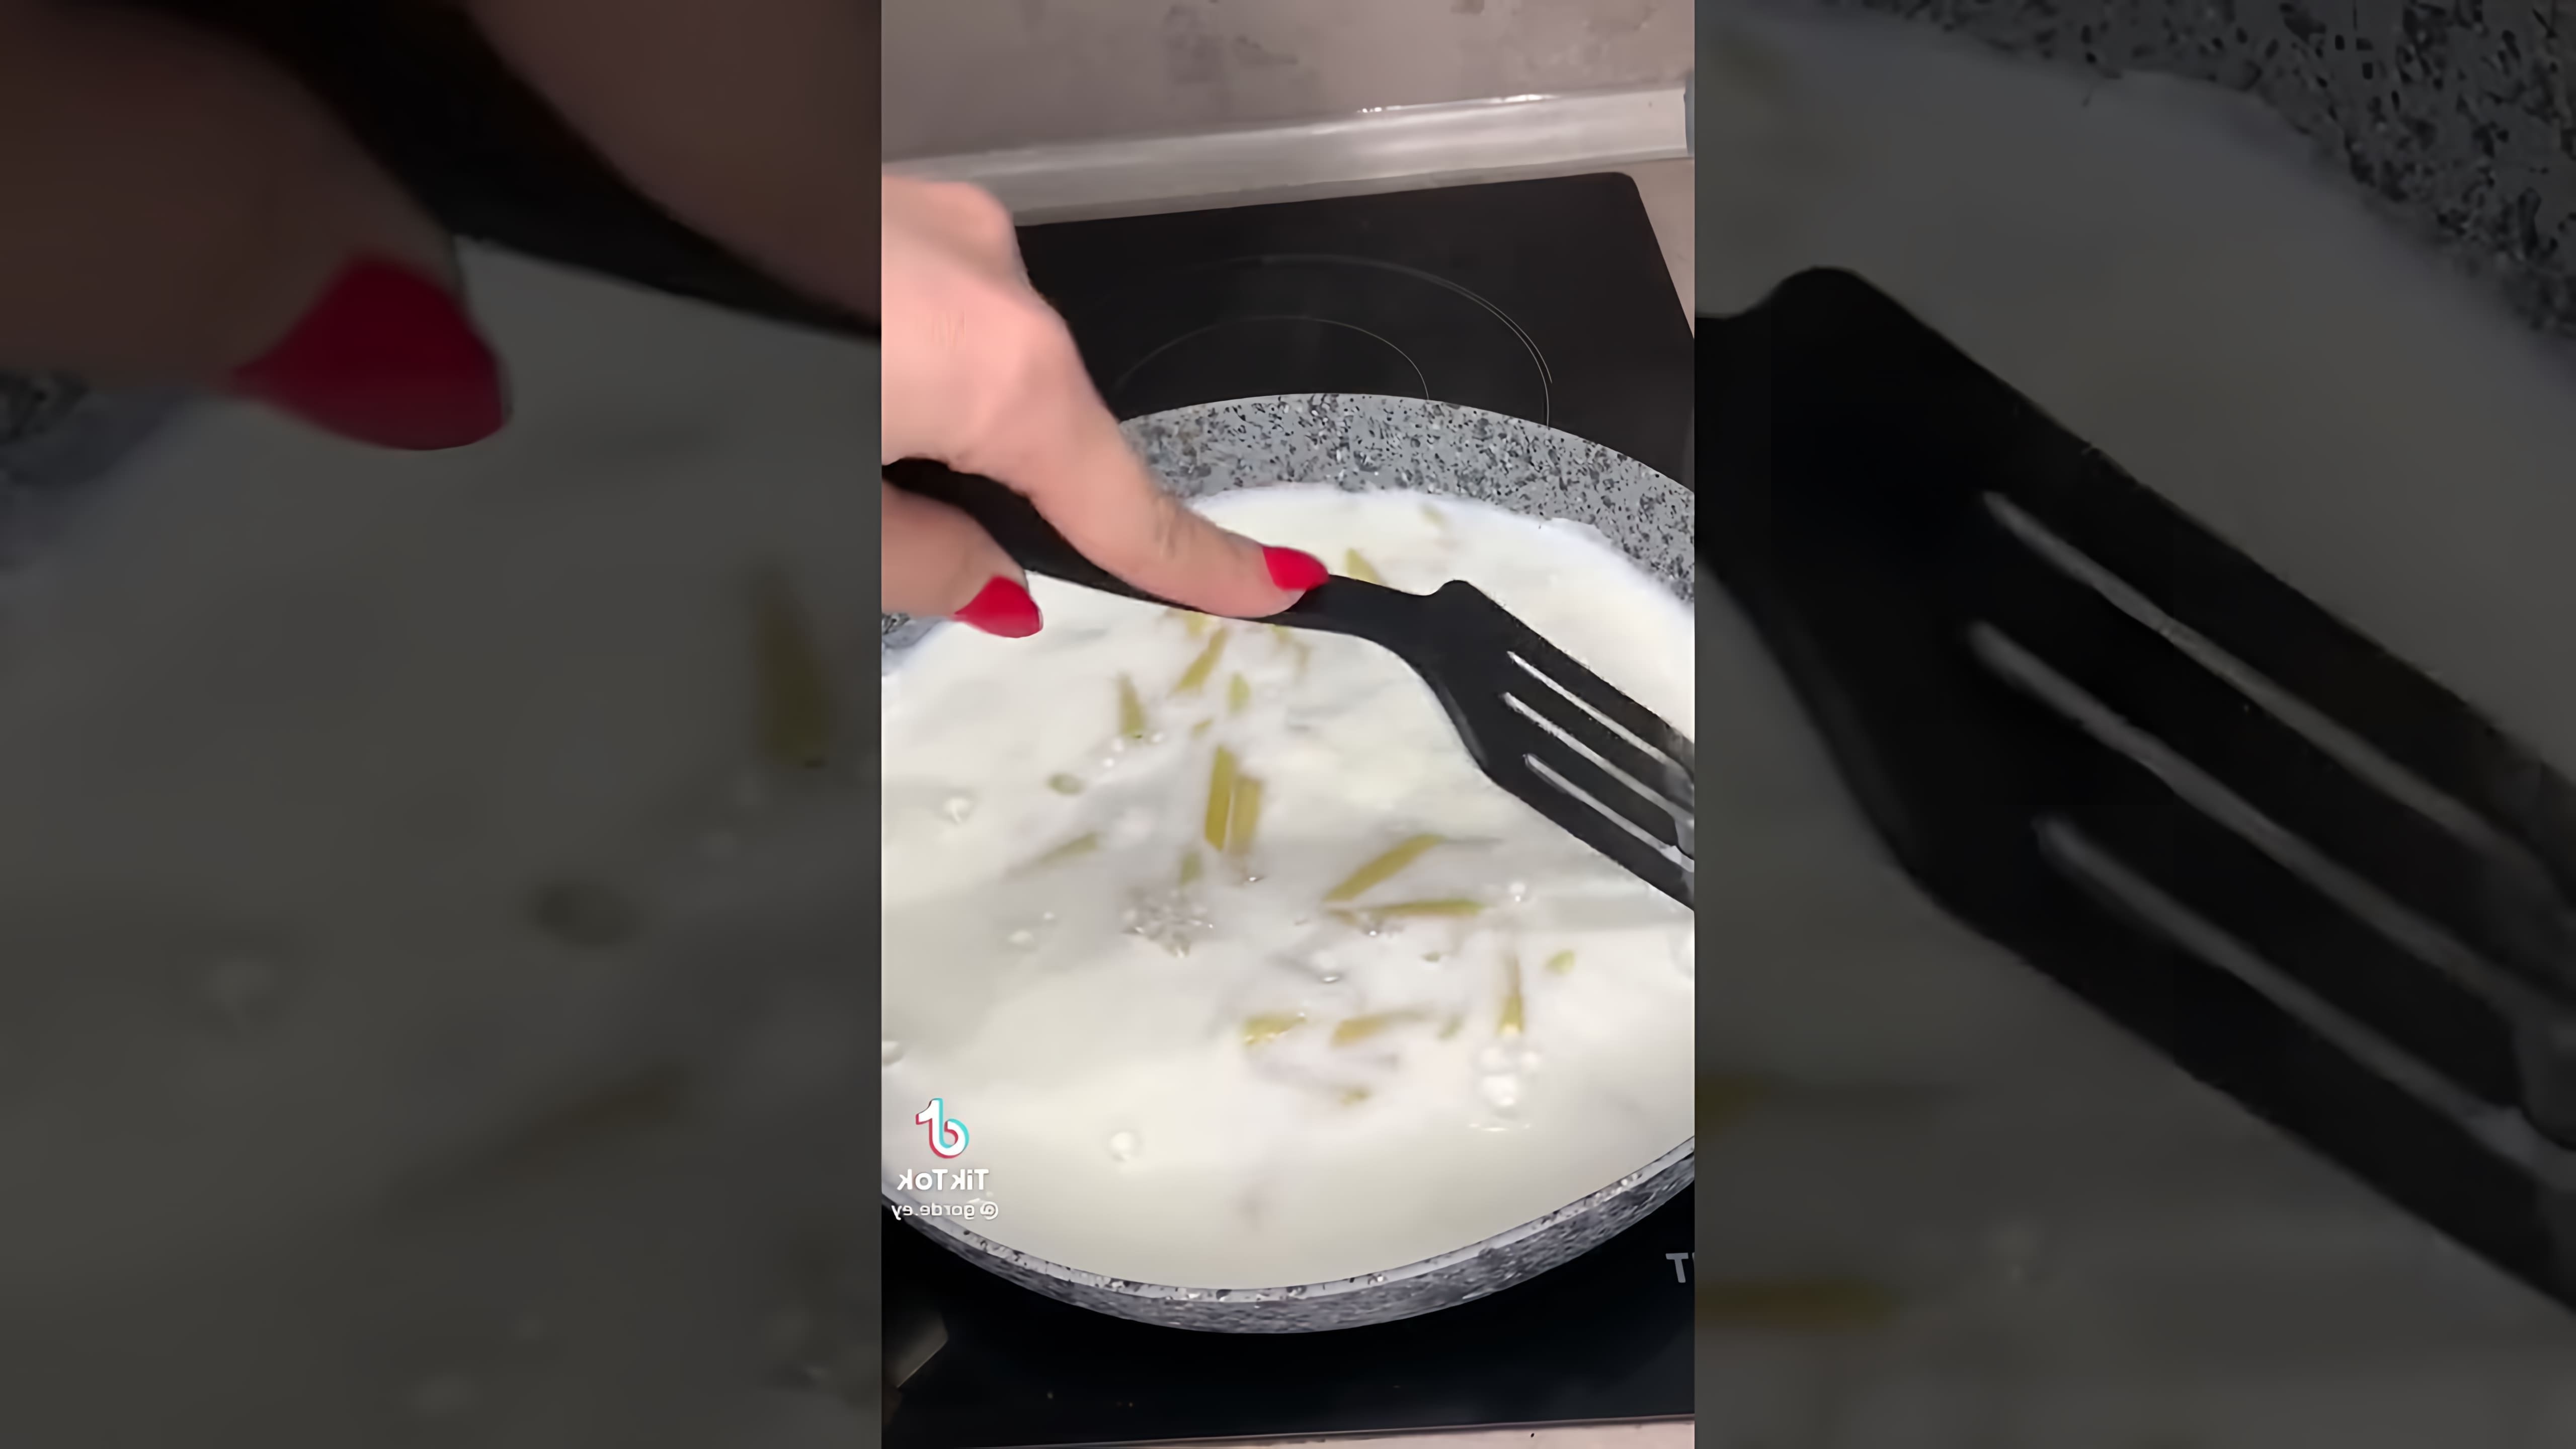 В этом видео демонстрируется рецепт приготовления макарон с сыром